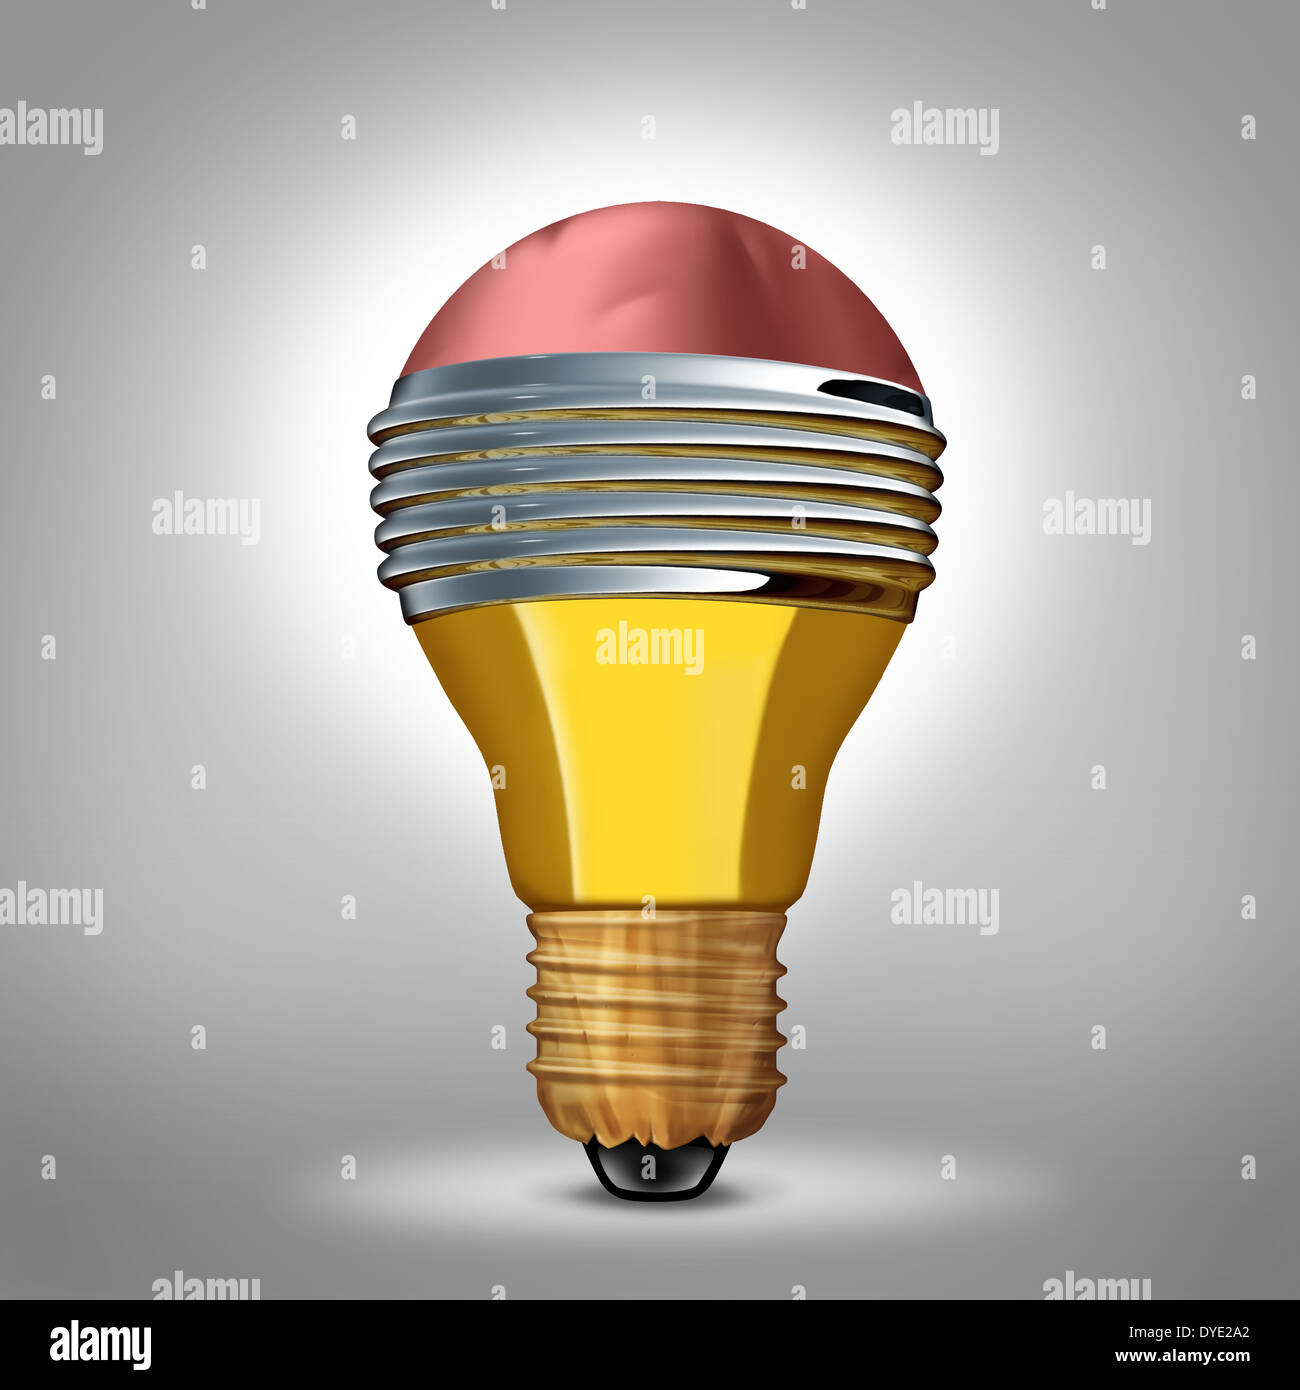 Creative Design business concept comme un symbole ampoule fait à partir d'un crayon en trois dimensions comme une métaphore d'intelligence, de la créativité des idées brillantes et novatrices de l'imagination. Banque D'Images